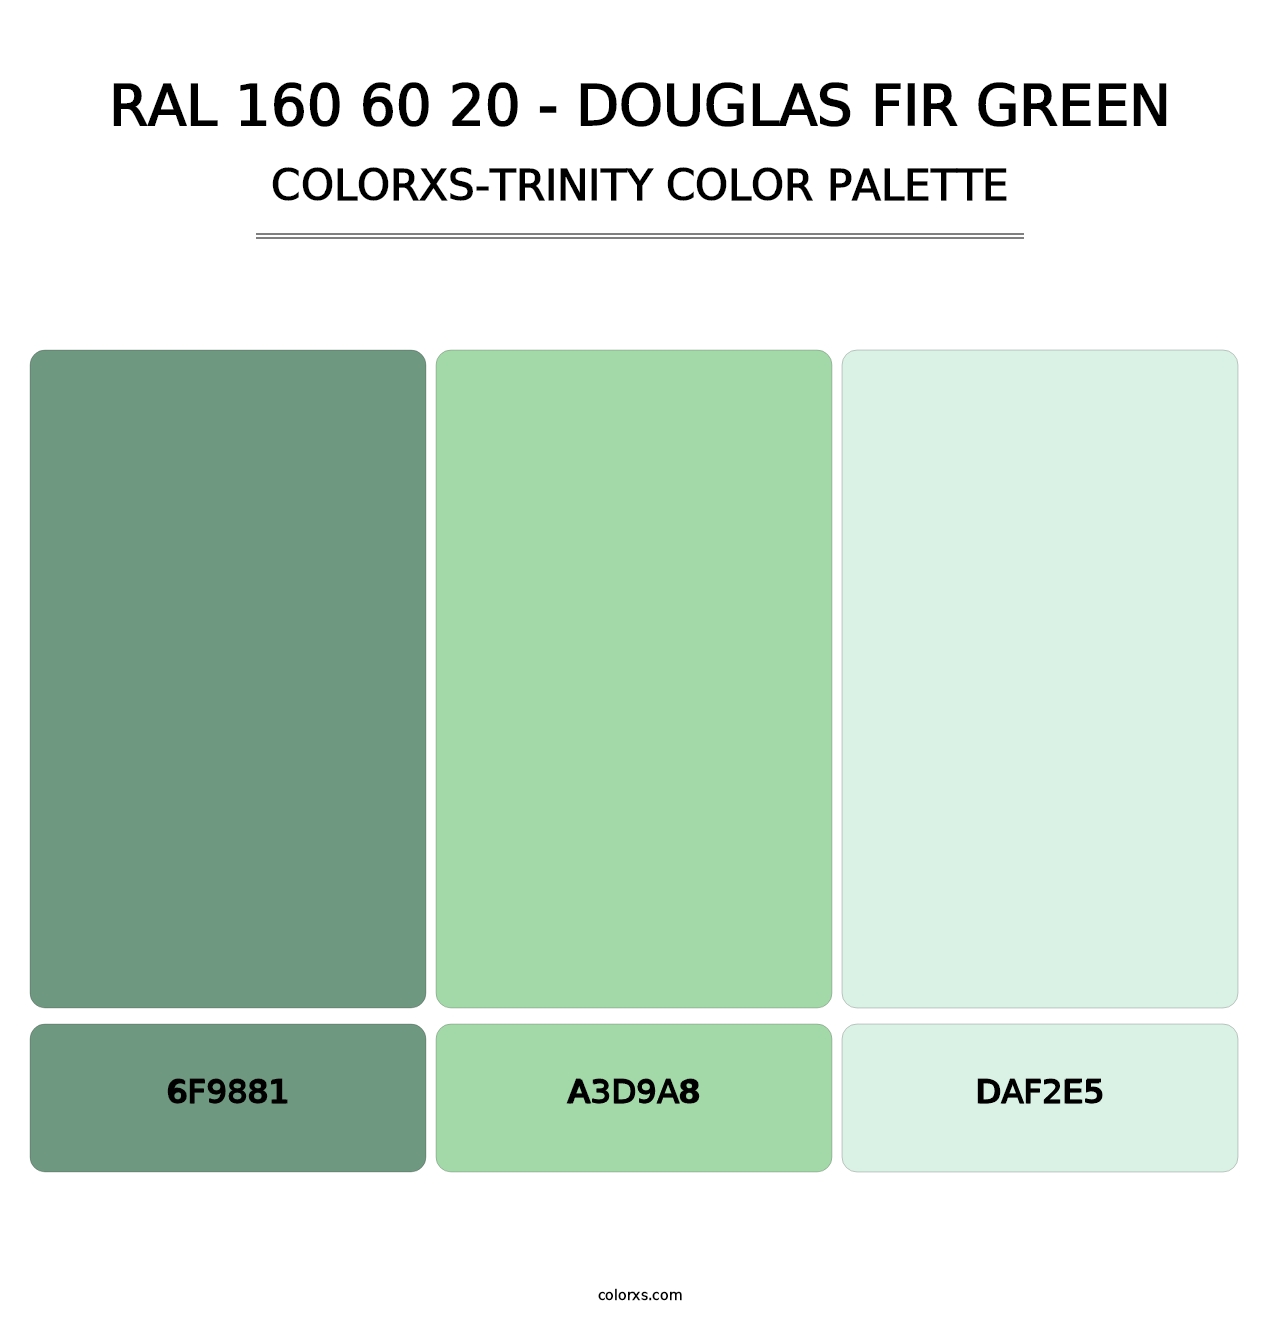 RAL 160 60 20 - Douglas Fir Green - Colorxs Trinity Palette